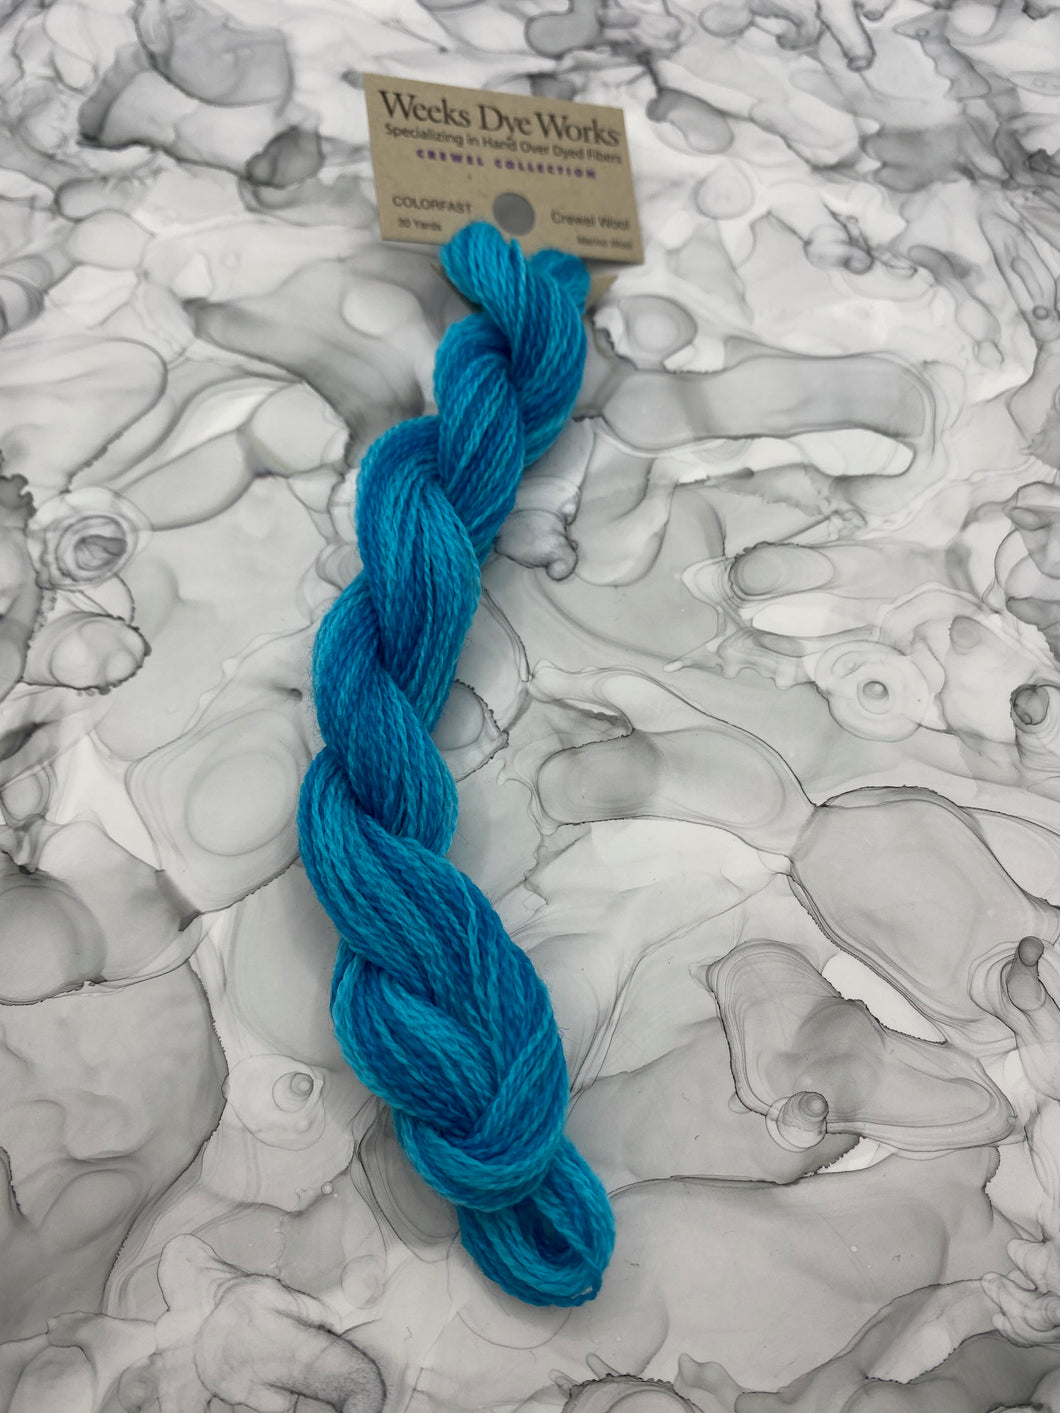 Weeks Dye Works Crewel Wool, Turquoise